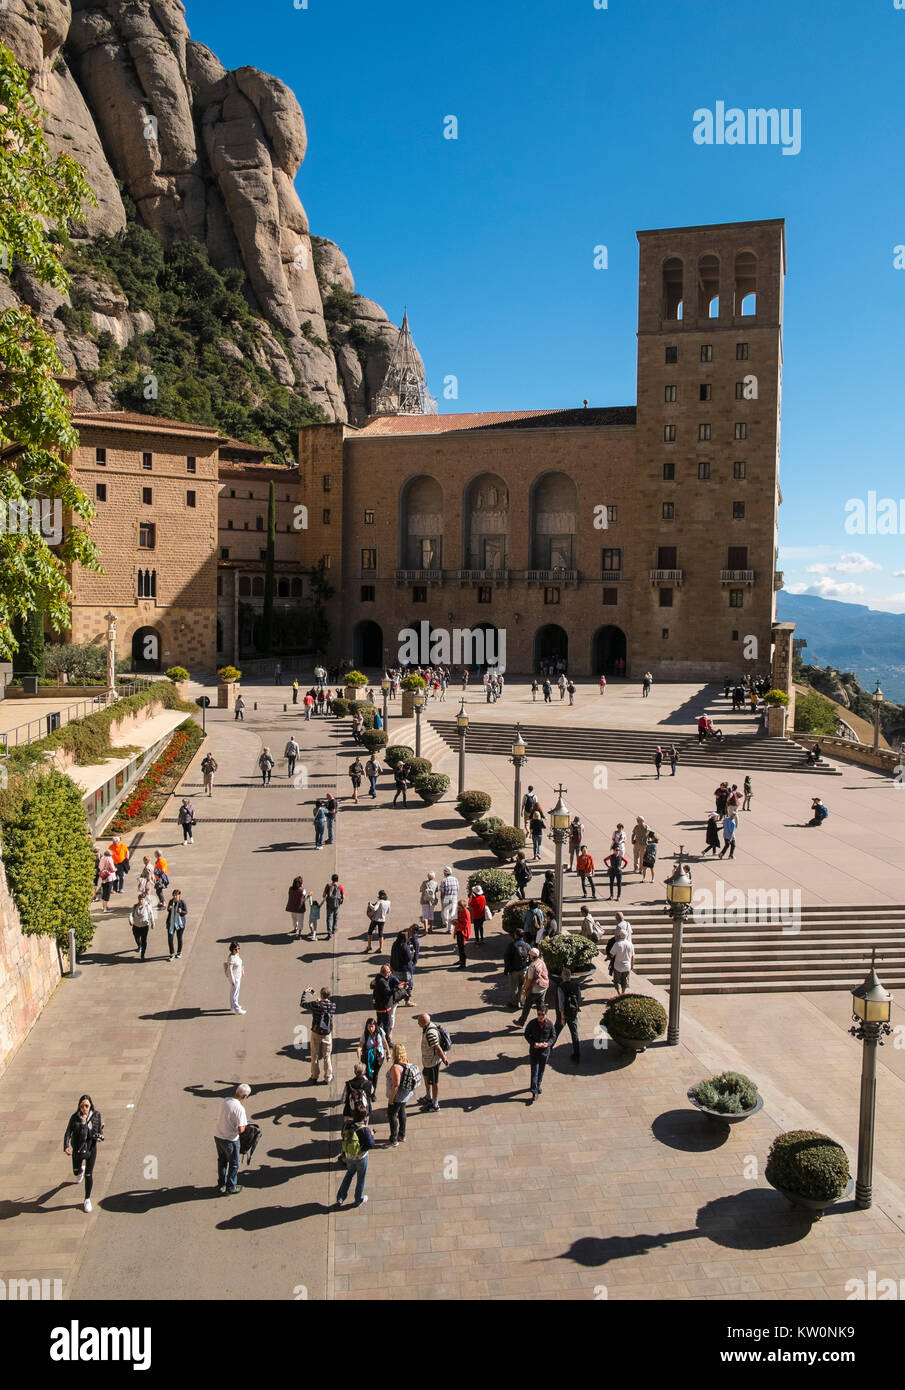 Les visiteurs se réunissent à l'extérieur du monastère de Santa Maria de Montserrat, Montserrat, Espagne Banque D'Images